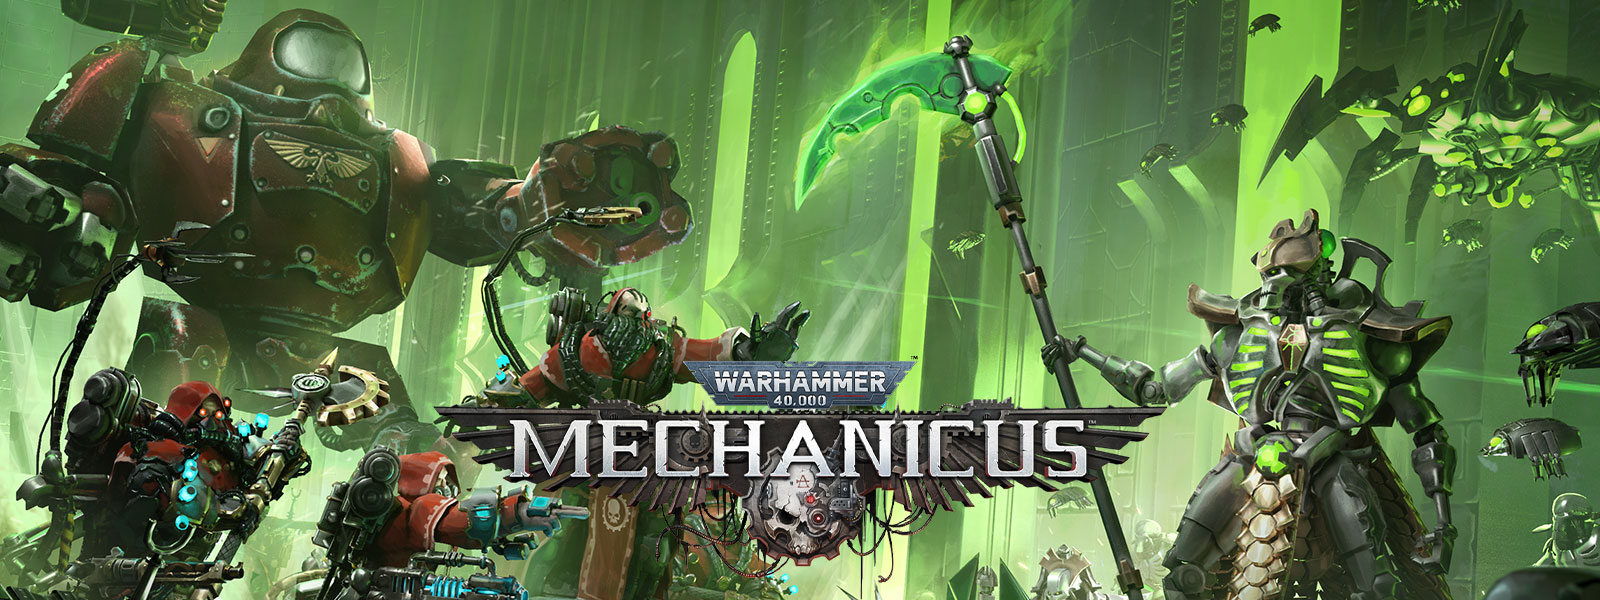 Warhammer 40,000: Mechanicus, Ejércitos de alta tecnología se preparan para la batalla.